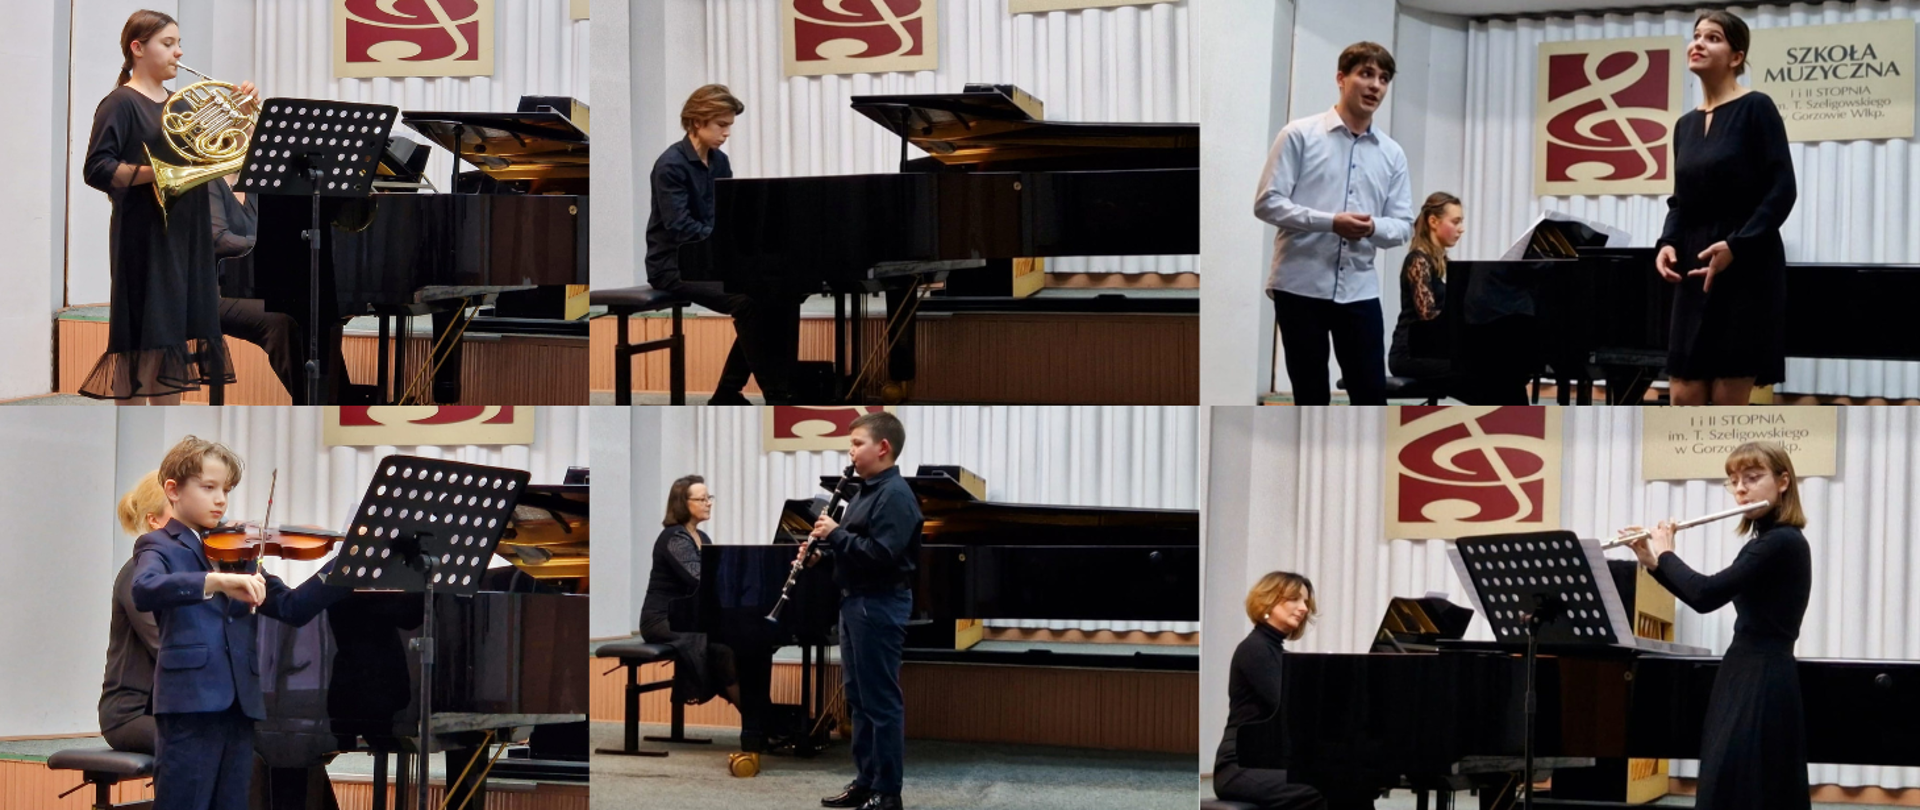 Kolaż sześciu zdjęć - wykonawców koncertu Lubimy muzykować. Od lewej u góry: waltornistka, pianista, para wokalistów. Na dole: skrzypek. klarnecista, flecistka